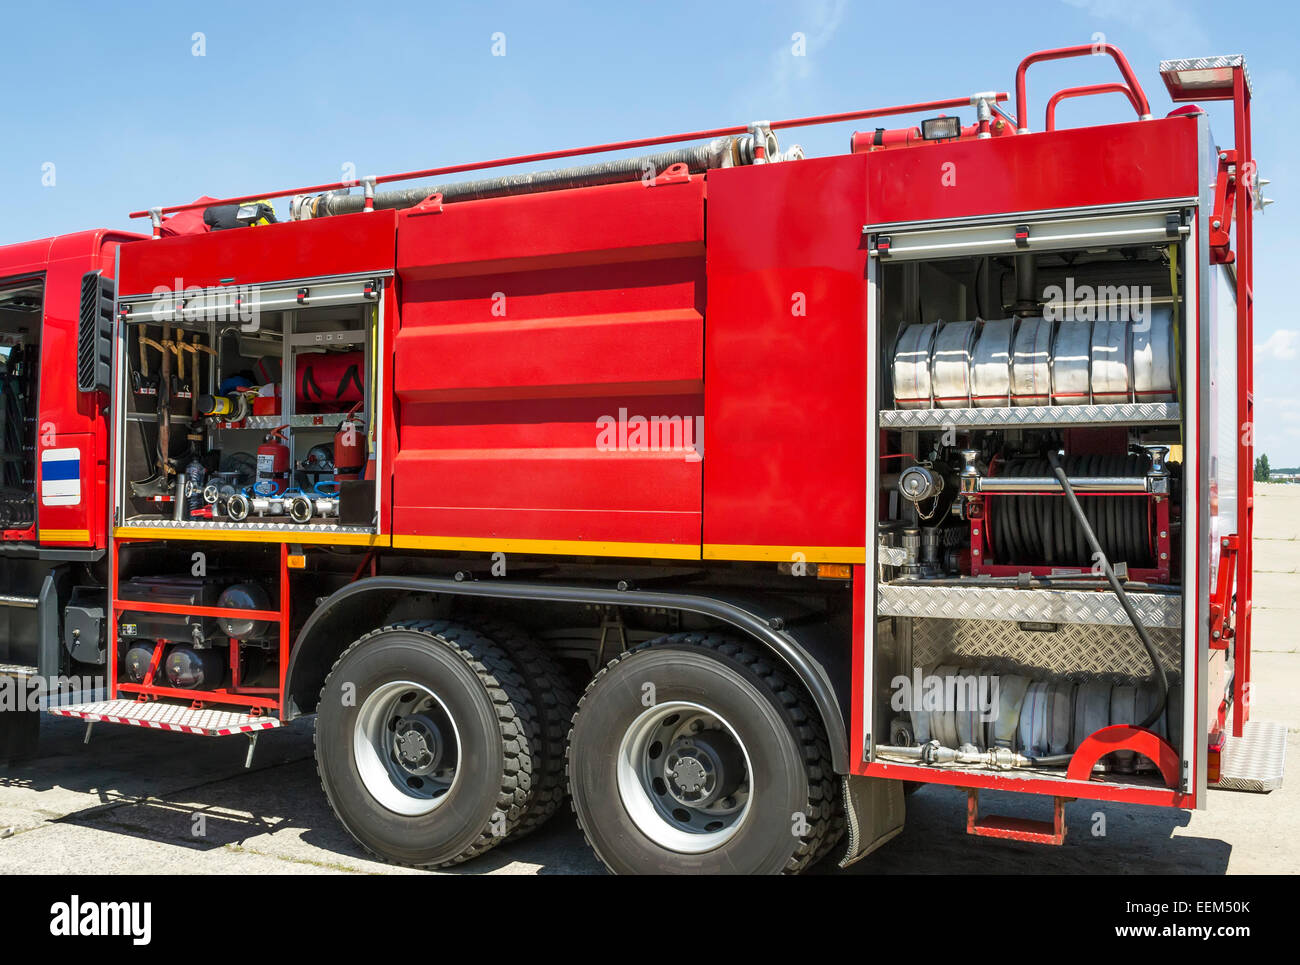 L'équipement utilisé dans la lutte contre les incendies installé sur un camion d'incendie moderne Banque D'Images